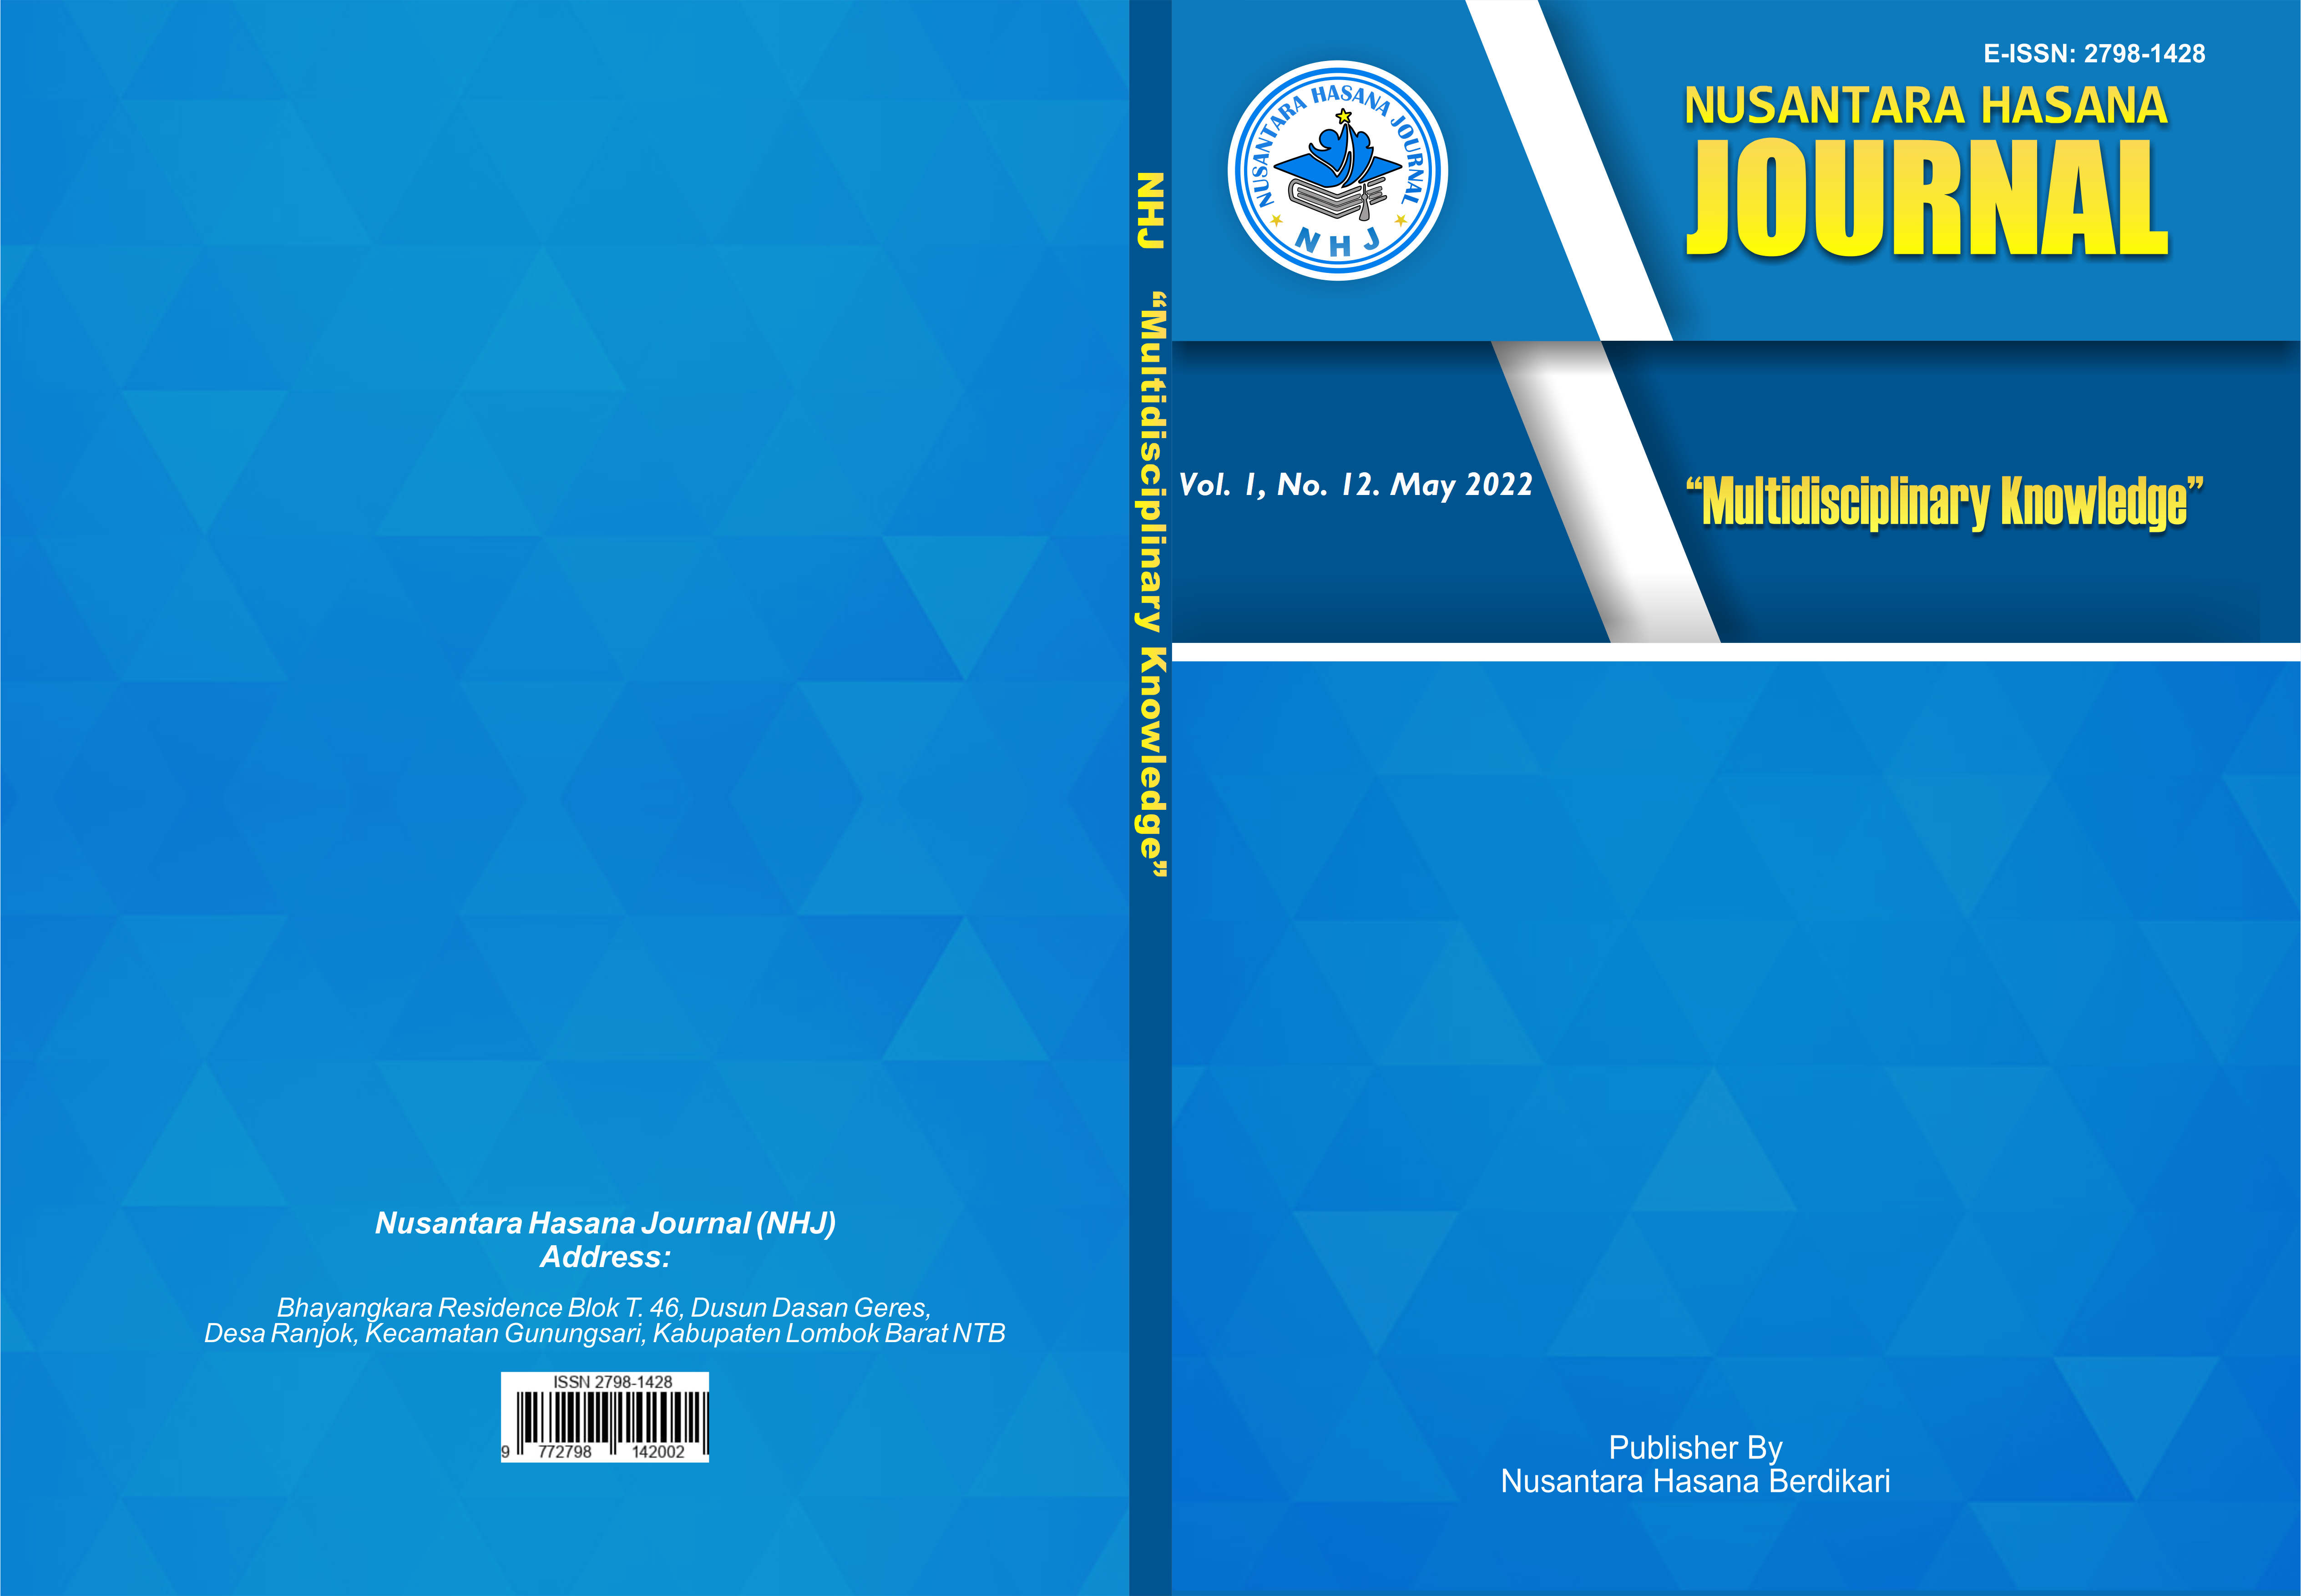 					View Vol. 1 No. 12 (2022): Nusantara Hasana Journal, May 2022
				